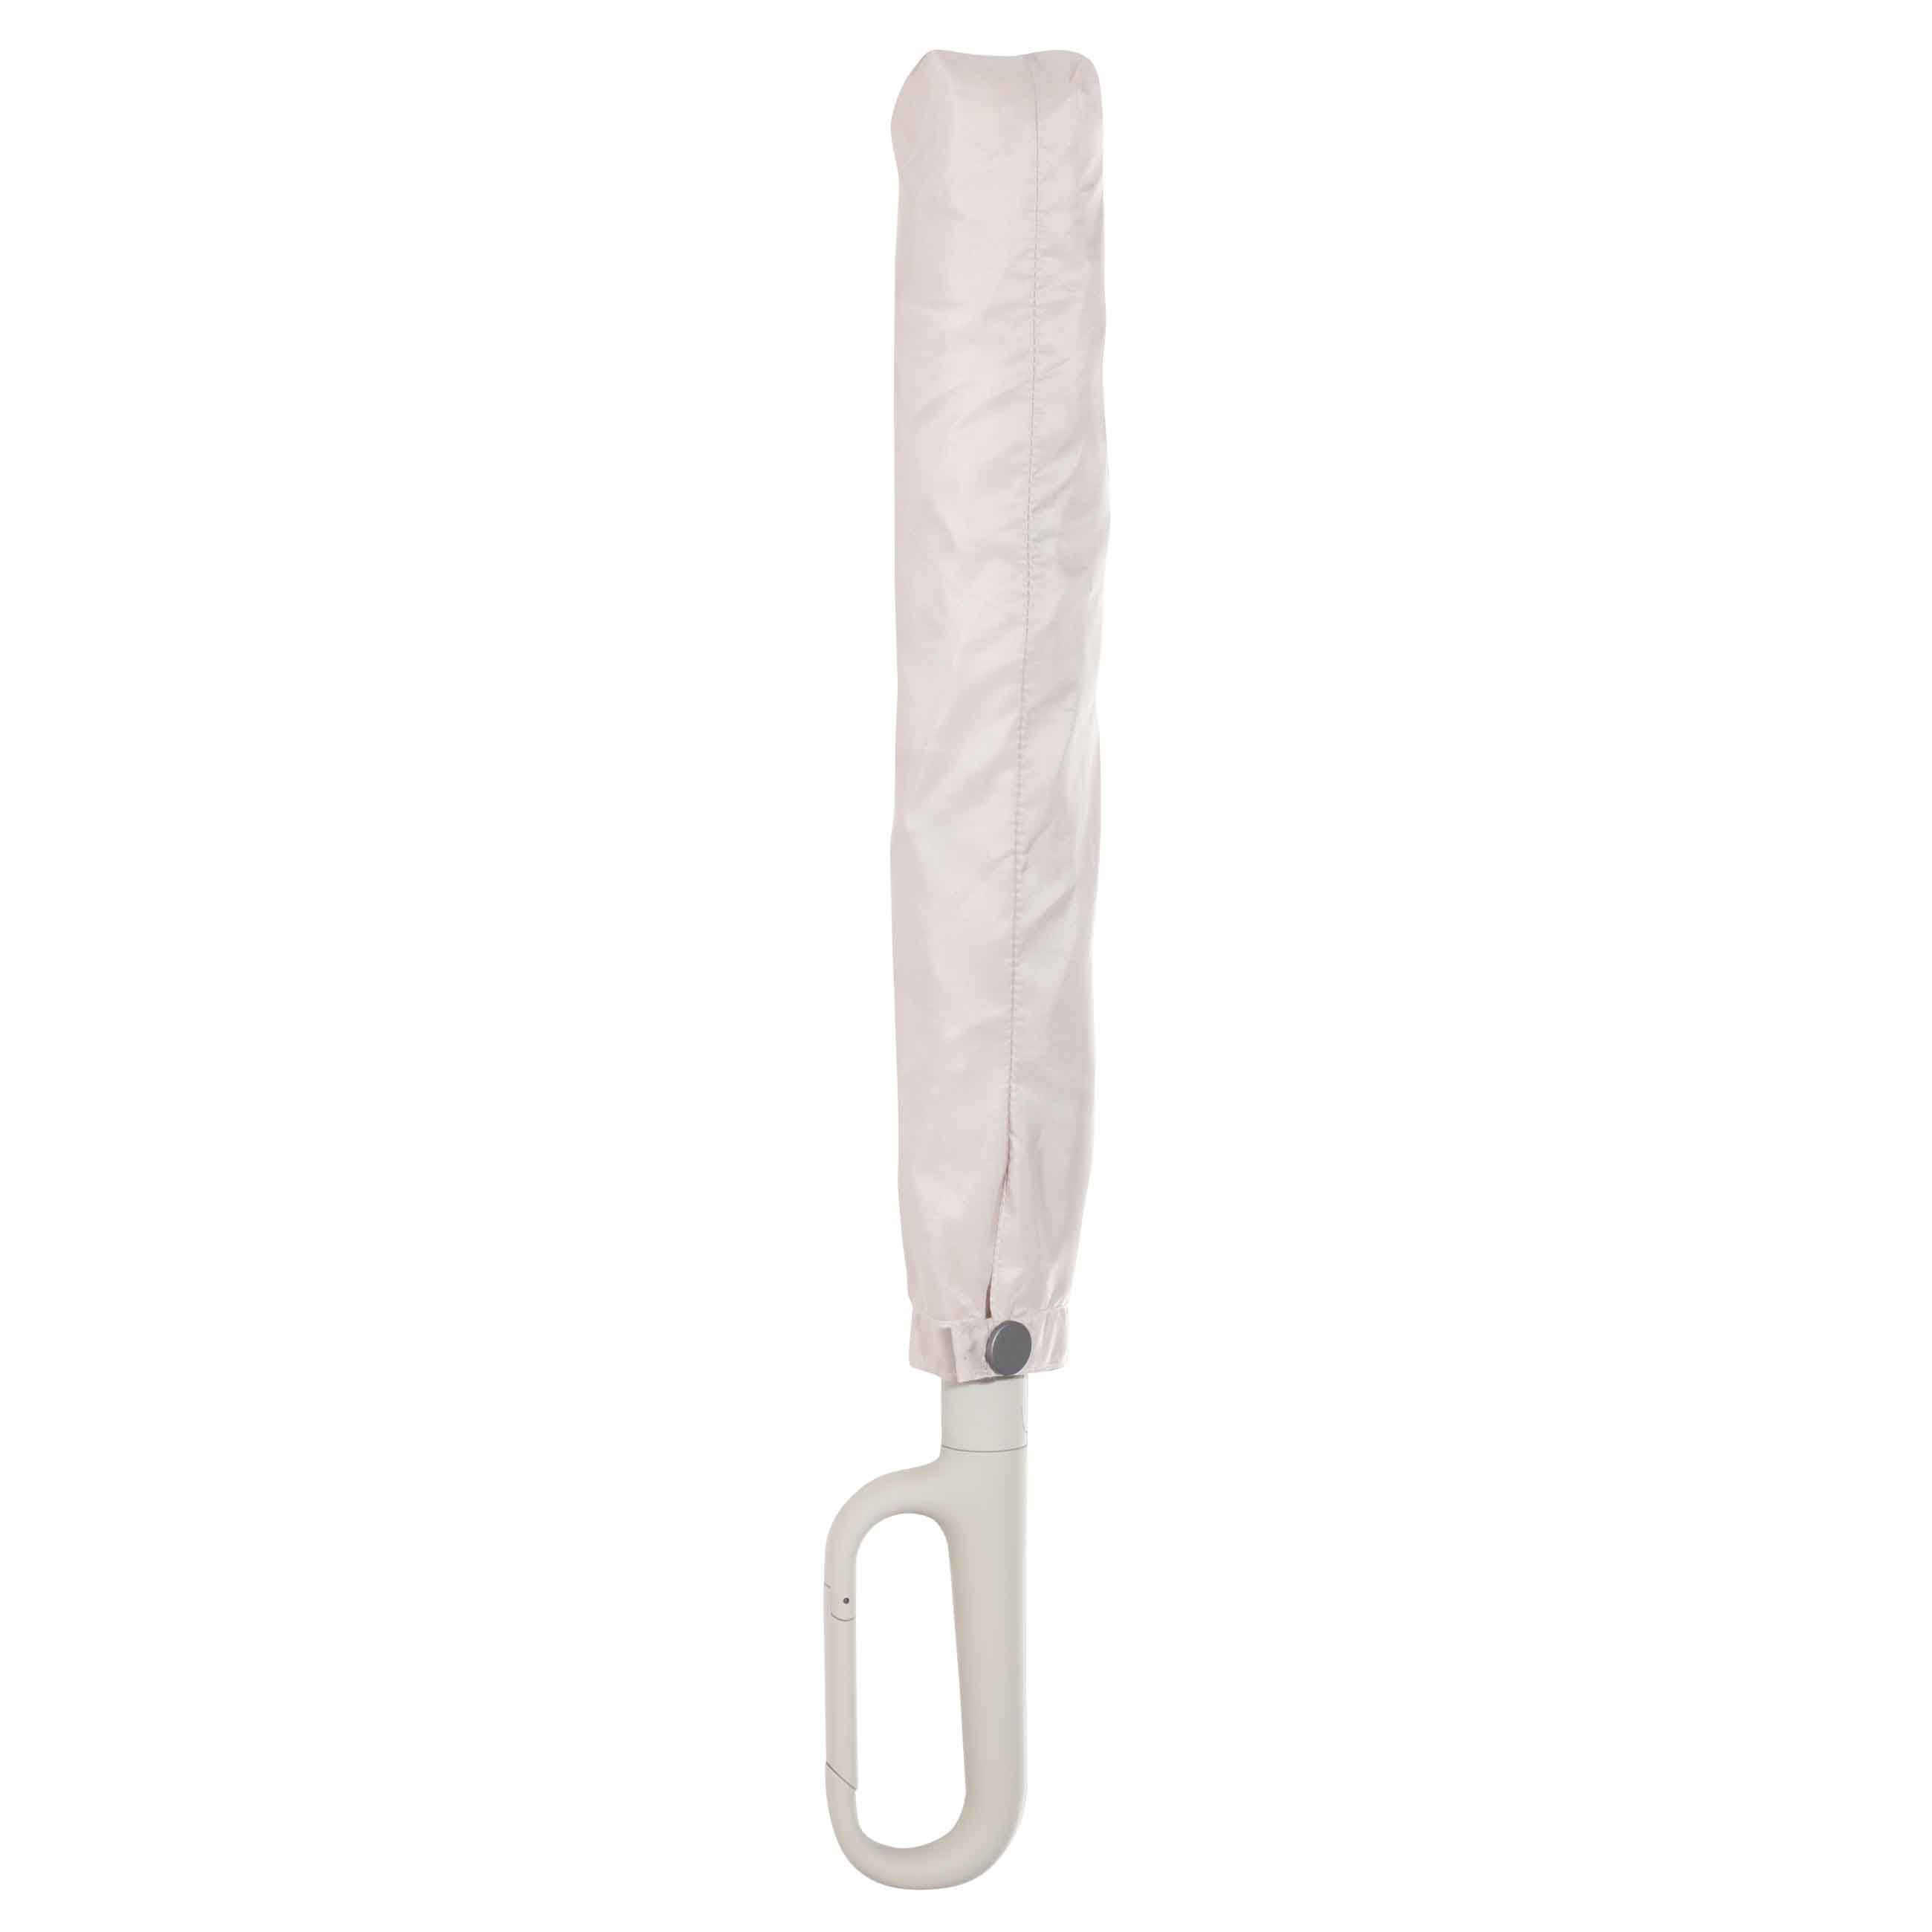 Зонт, 70 см, складной, полу-автоматический, с ручкой-карабином, эпонж, бежевый, Rainfall изображение № 7